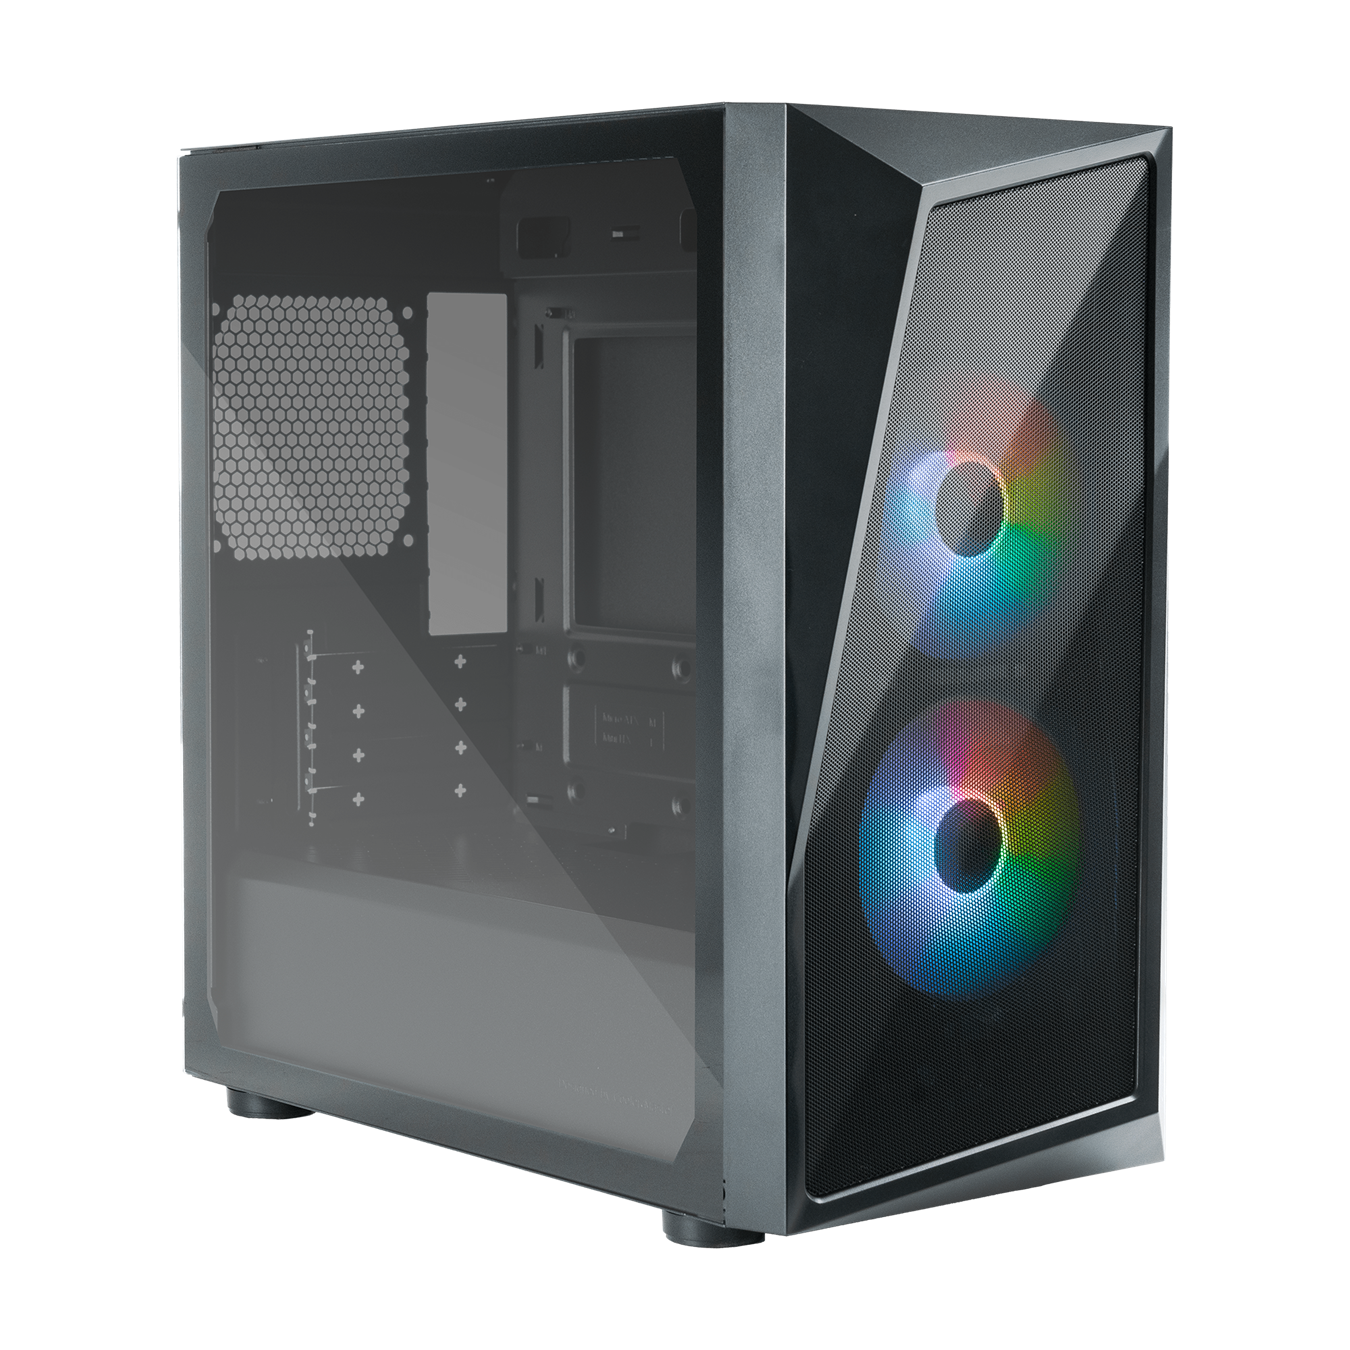  Mini-Tower Case: CMP 320 - Black <br>2x 120mm ARGB Fans, 1x USB 3.2 1x USB 2.0, Tempered Glass Side Panel, Supports: mATX/mini-ITX  